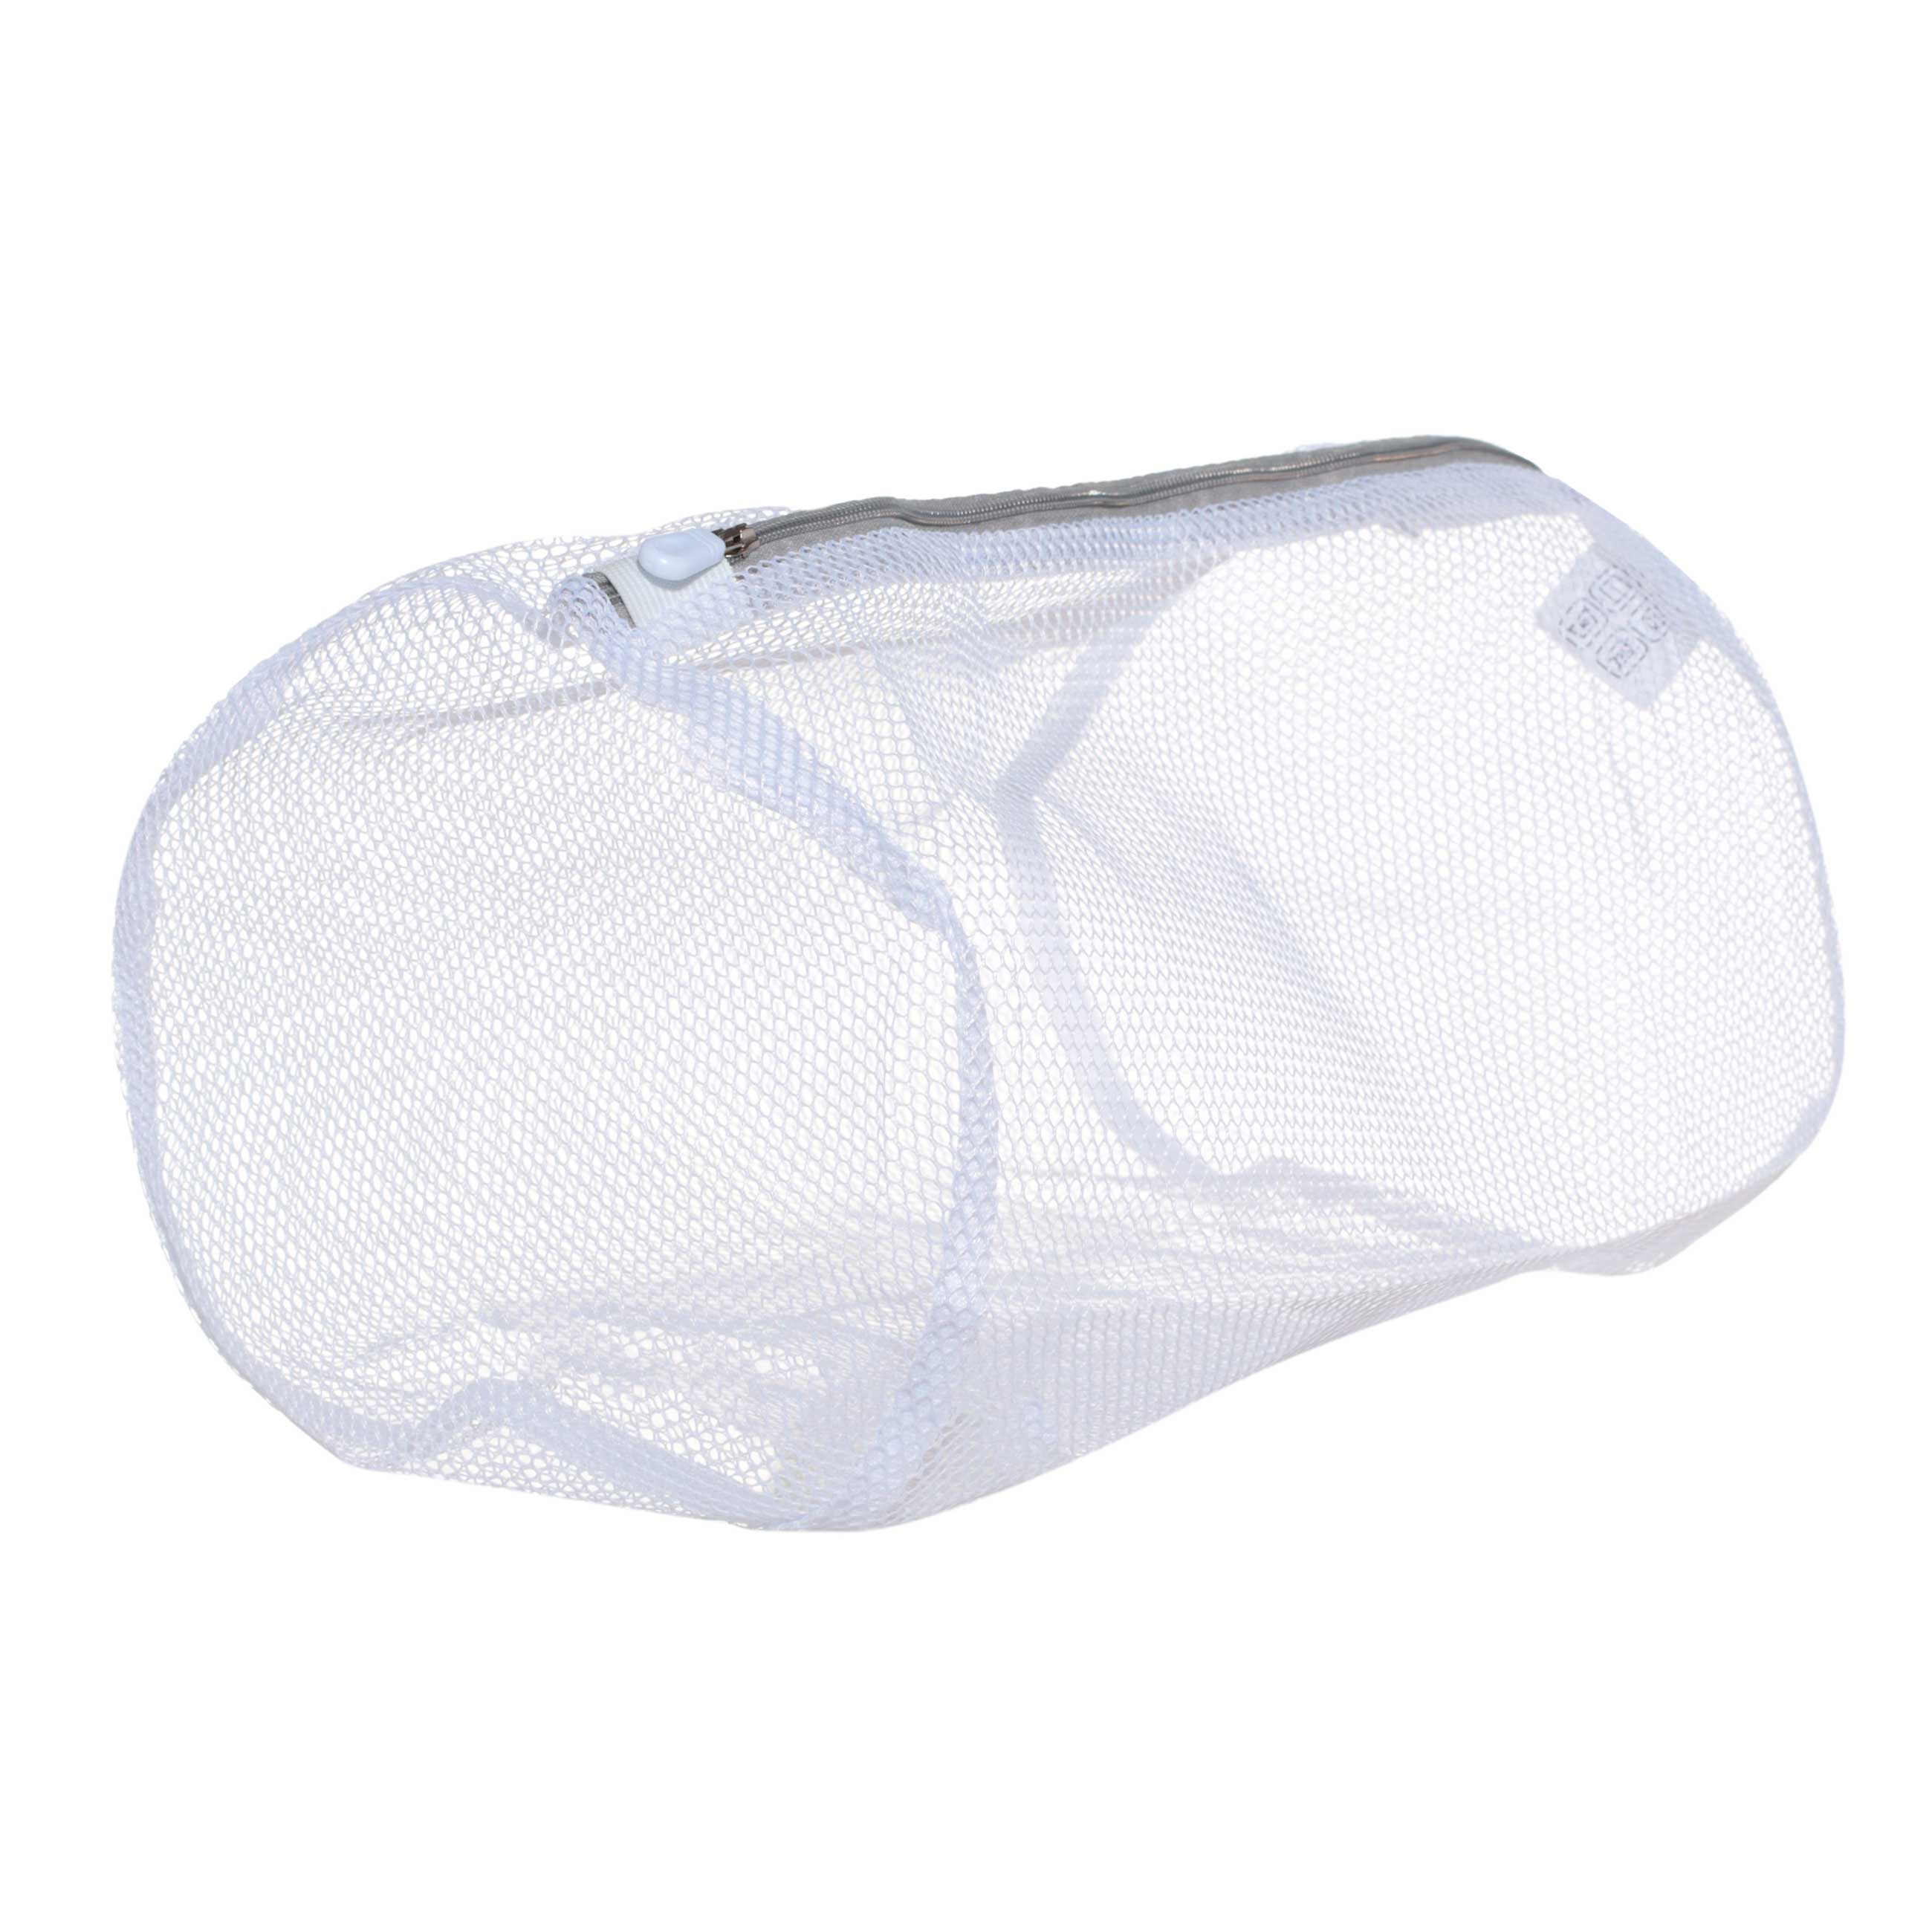 Мешок для стирки носков и колготок, 22х33 см, полиэстер, бело-серый, Safety изображение № 2